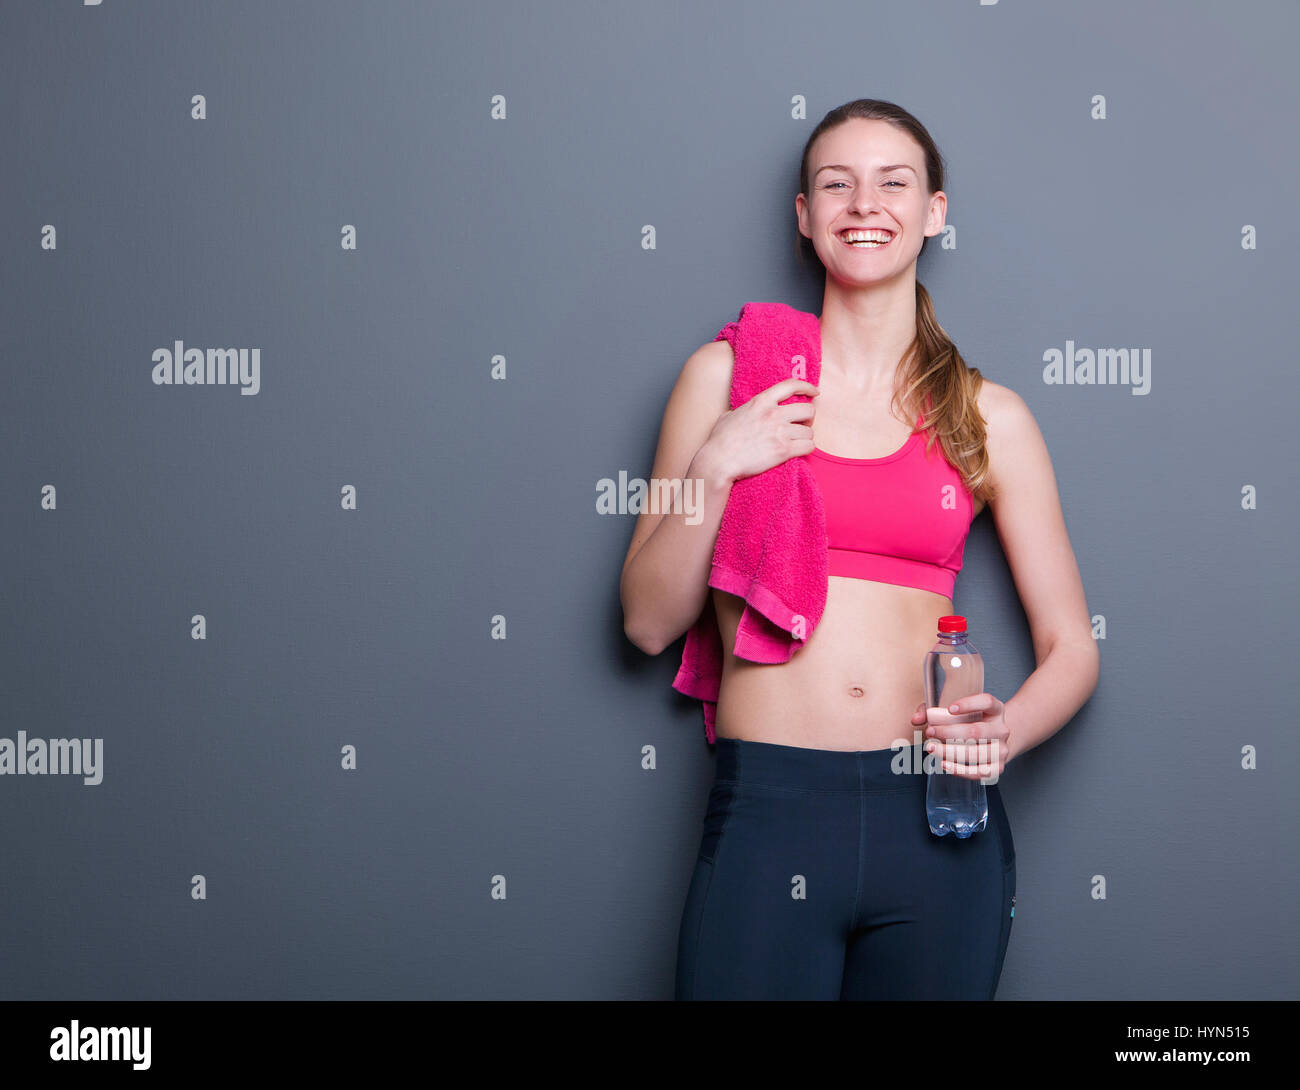 Portrait of a young woman smiling avec serviette et une bouteille d'eau après entraînement Banque D'Images